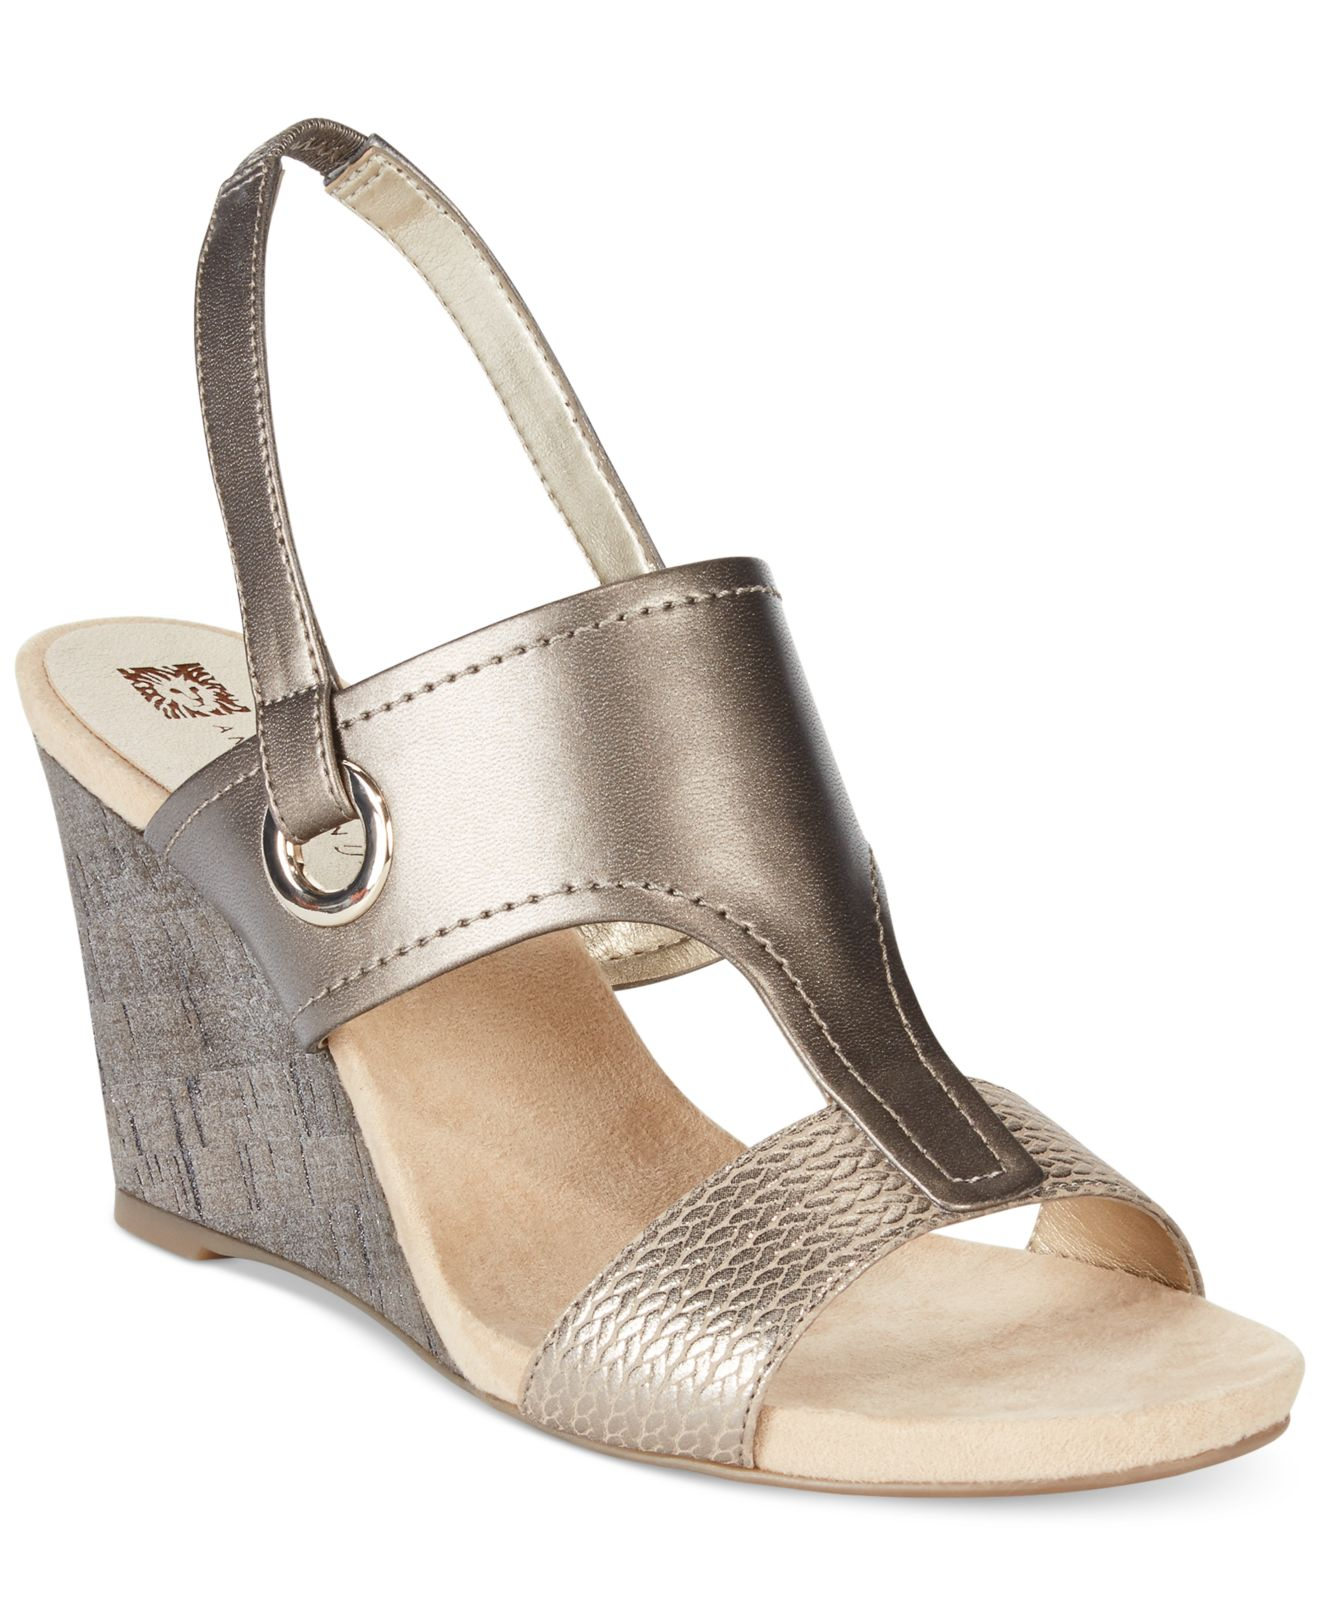 Anne Klein Leni Wedge Sandals in Pewter (Metallic) - Lyst